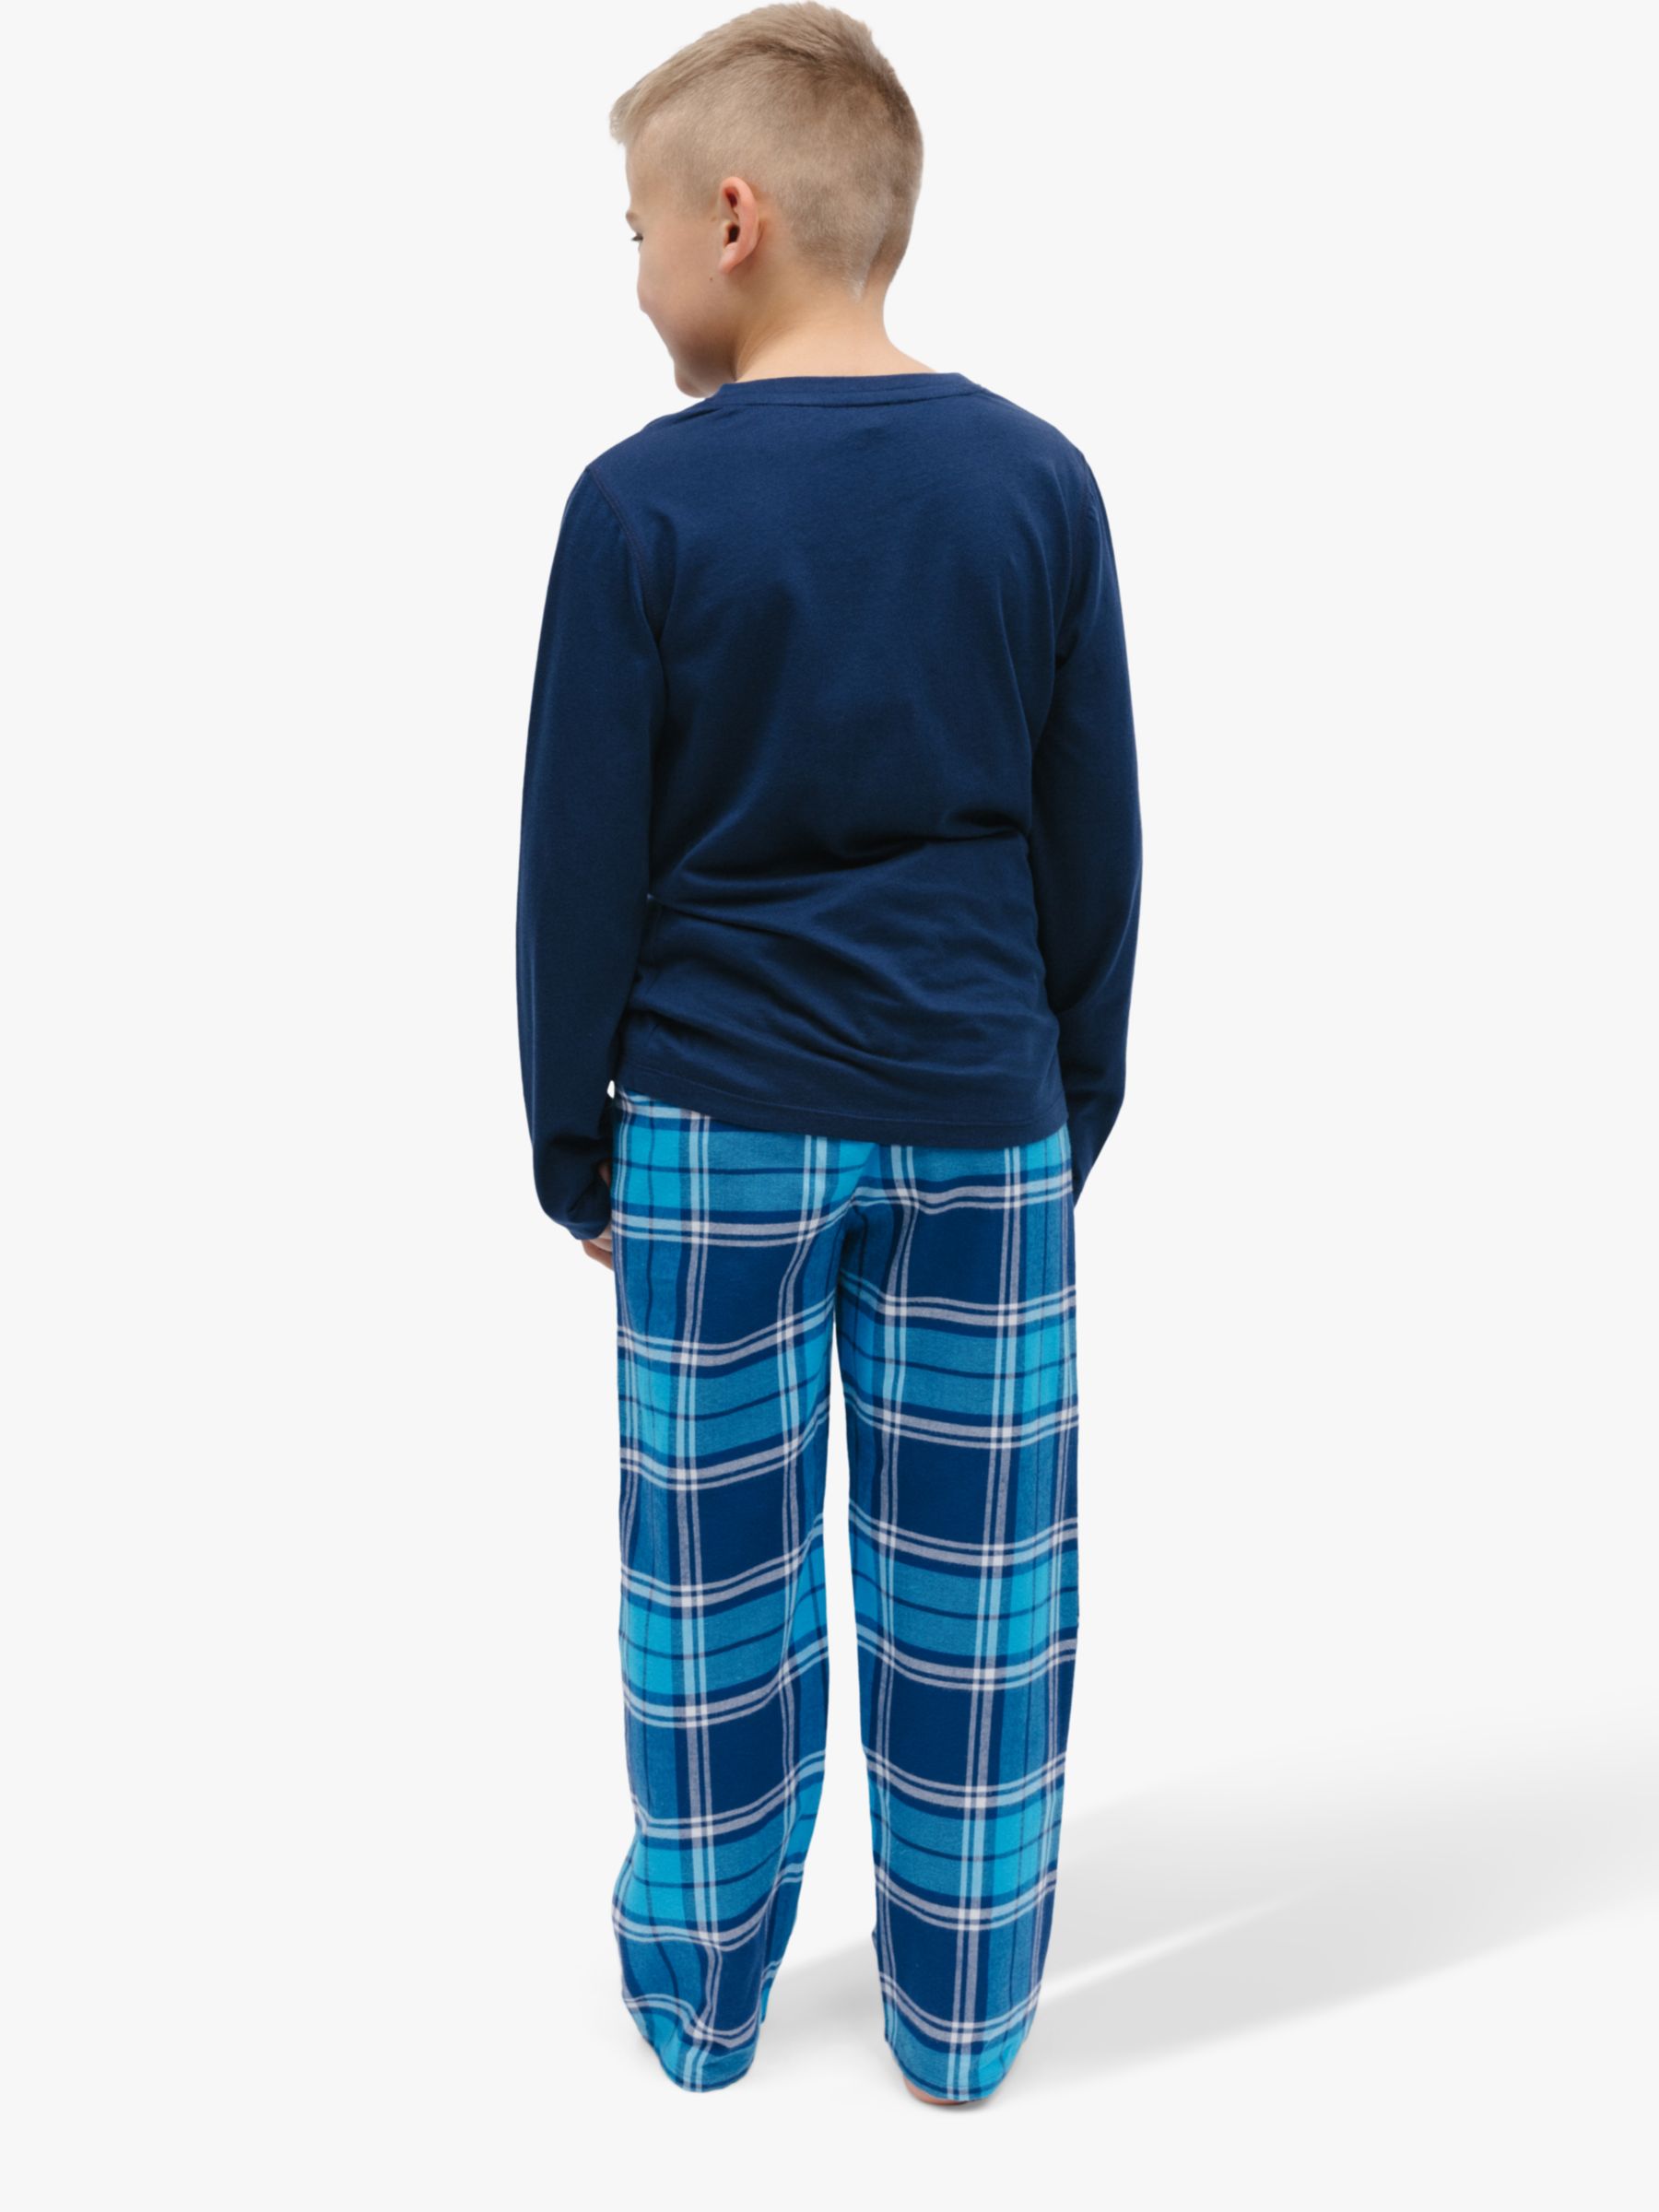 Minijammies Kids' Felix Check Unisex Pyjamas, Dark Blue, 2-3 years